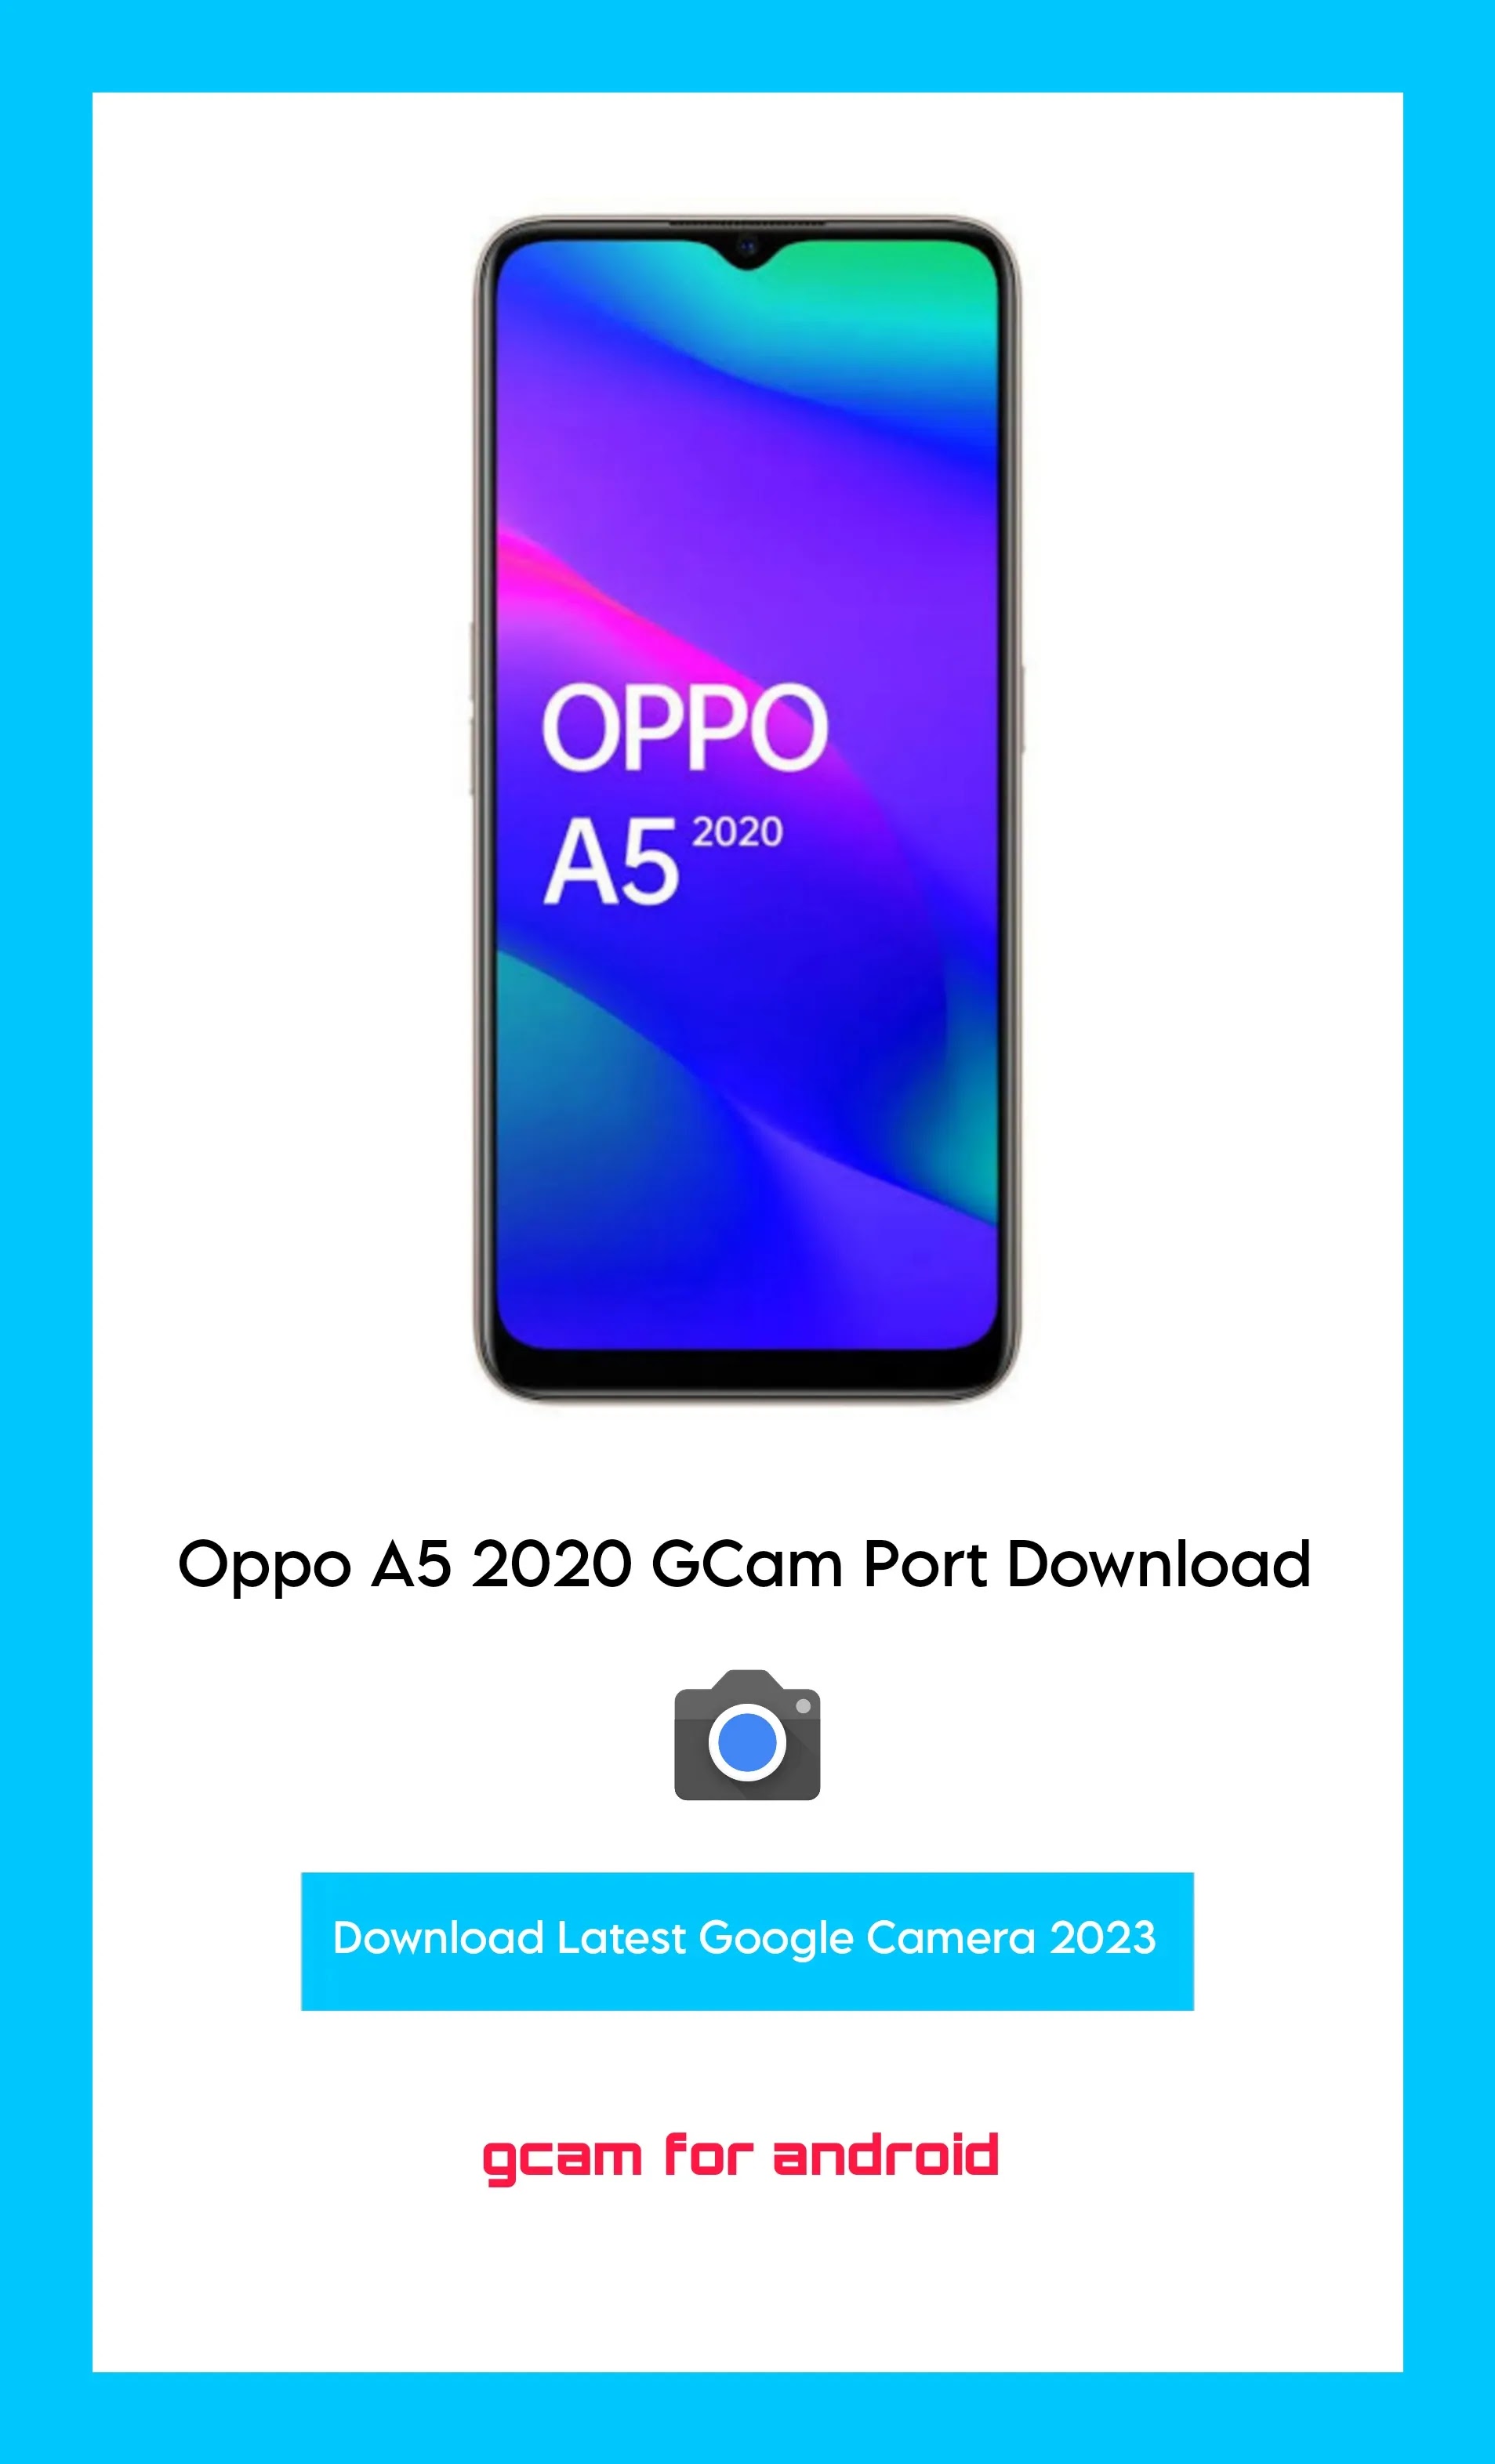 Oppo A5 2020 Gcam port